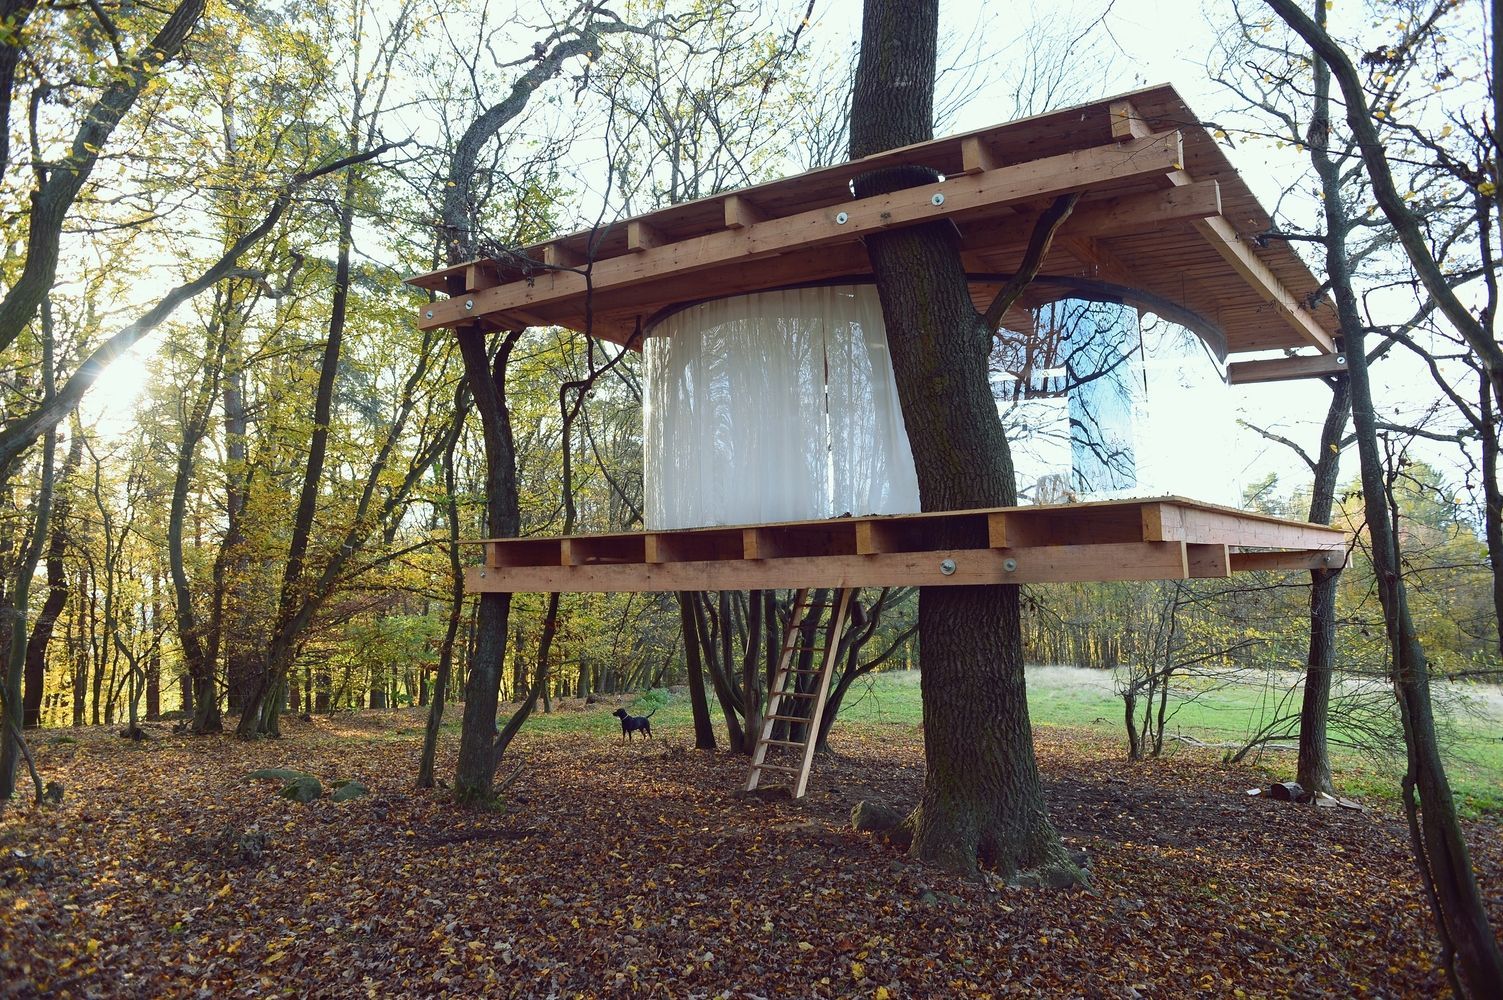 Прозора хатинка на дереві: в Чехії з'явилась незвична споруда – фото 